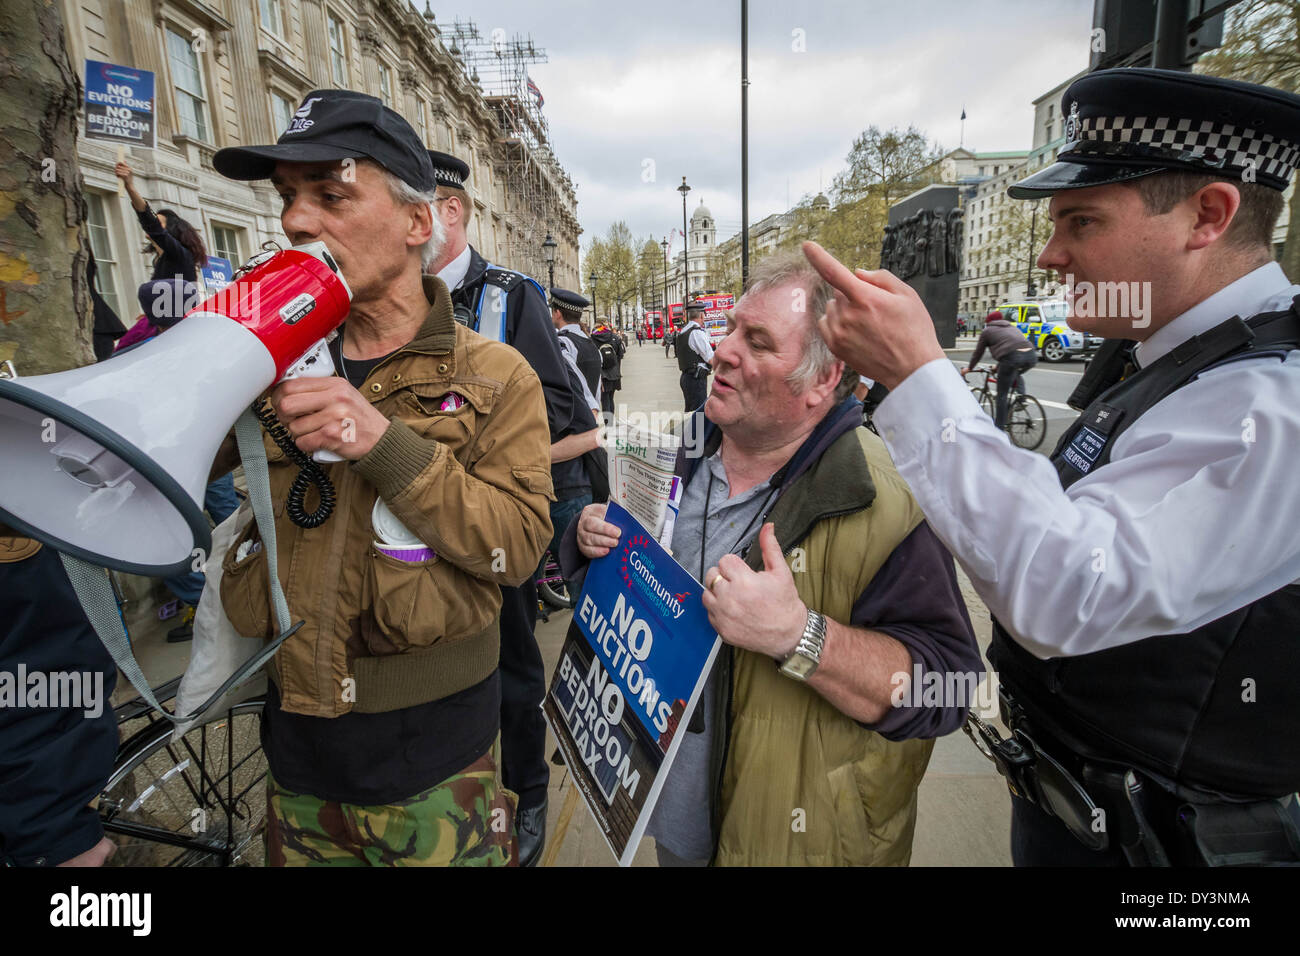 Protestation contre la « taxe de chambre » devant Downing Street à Londres, Royaume-Uni. Banque D'Images